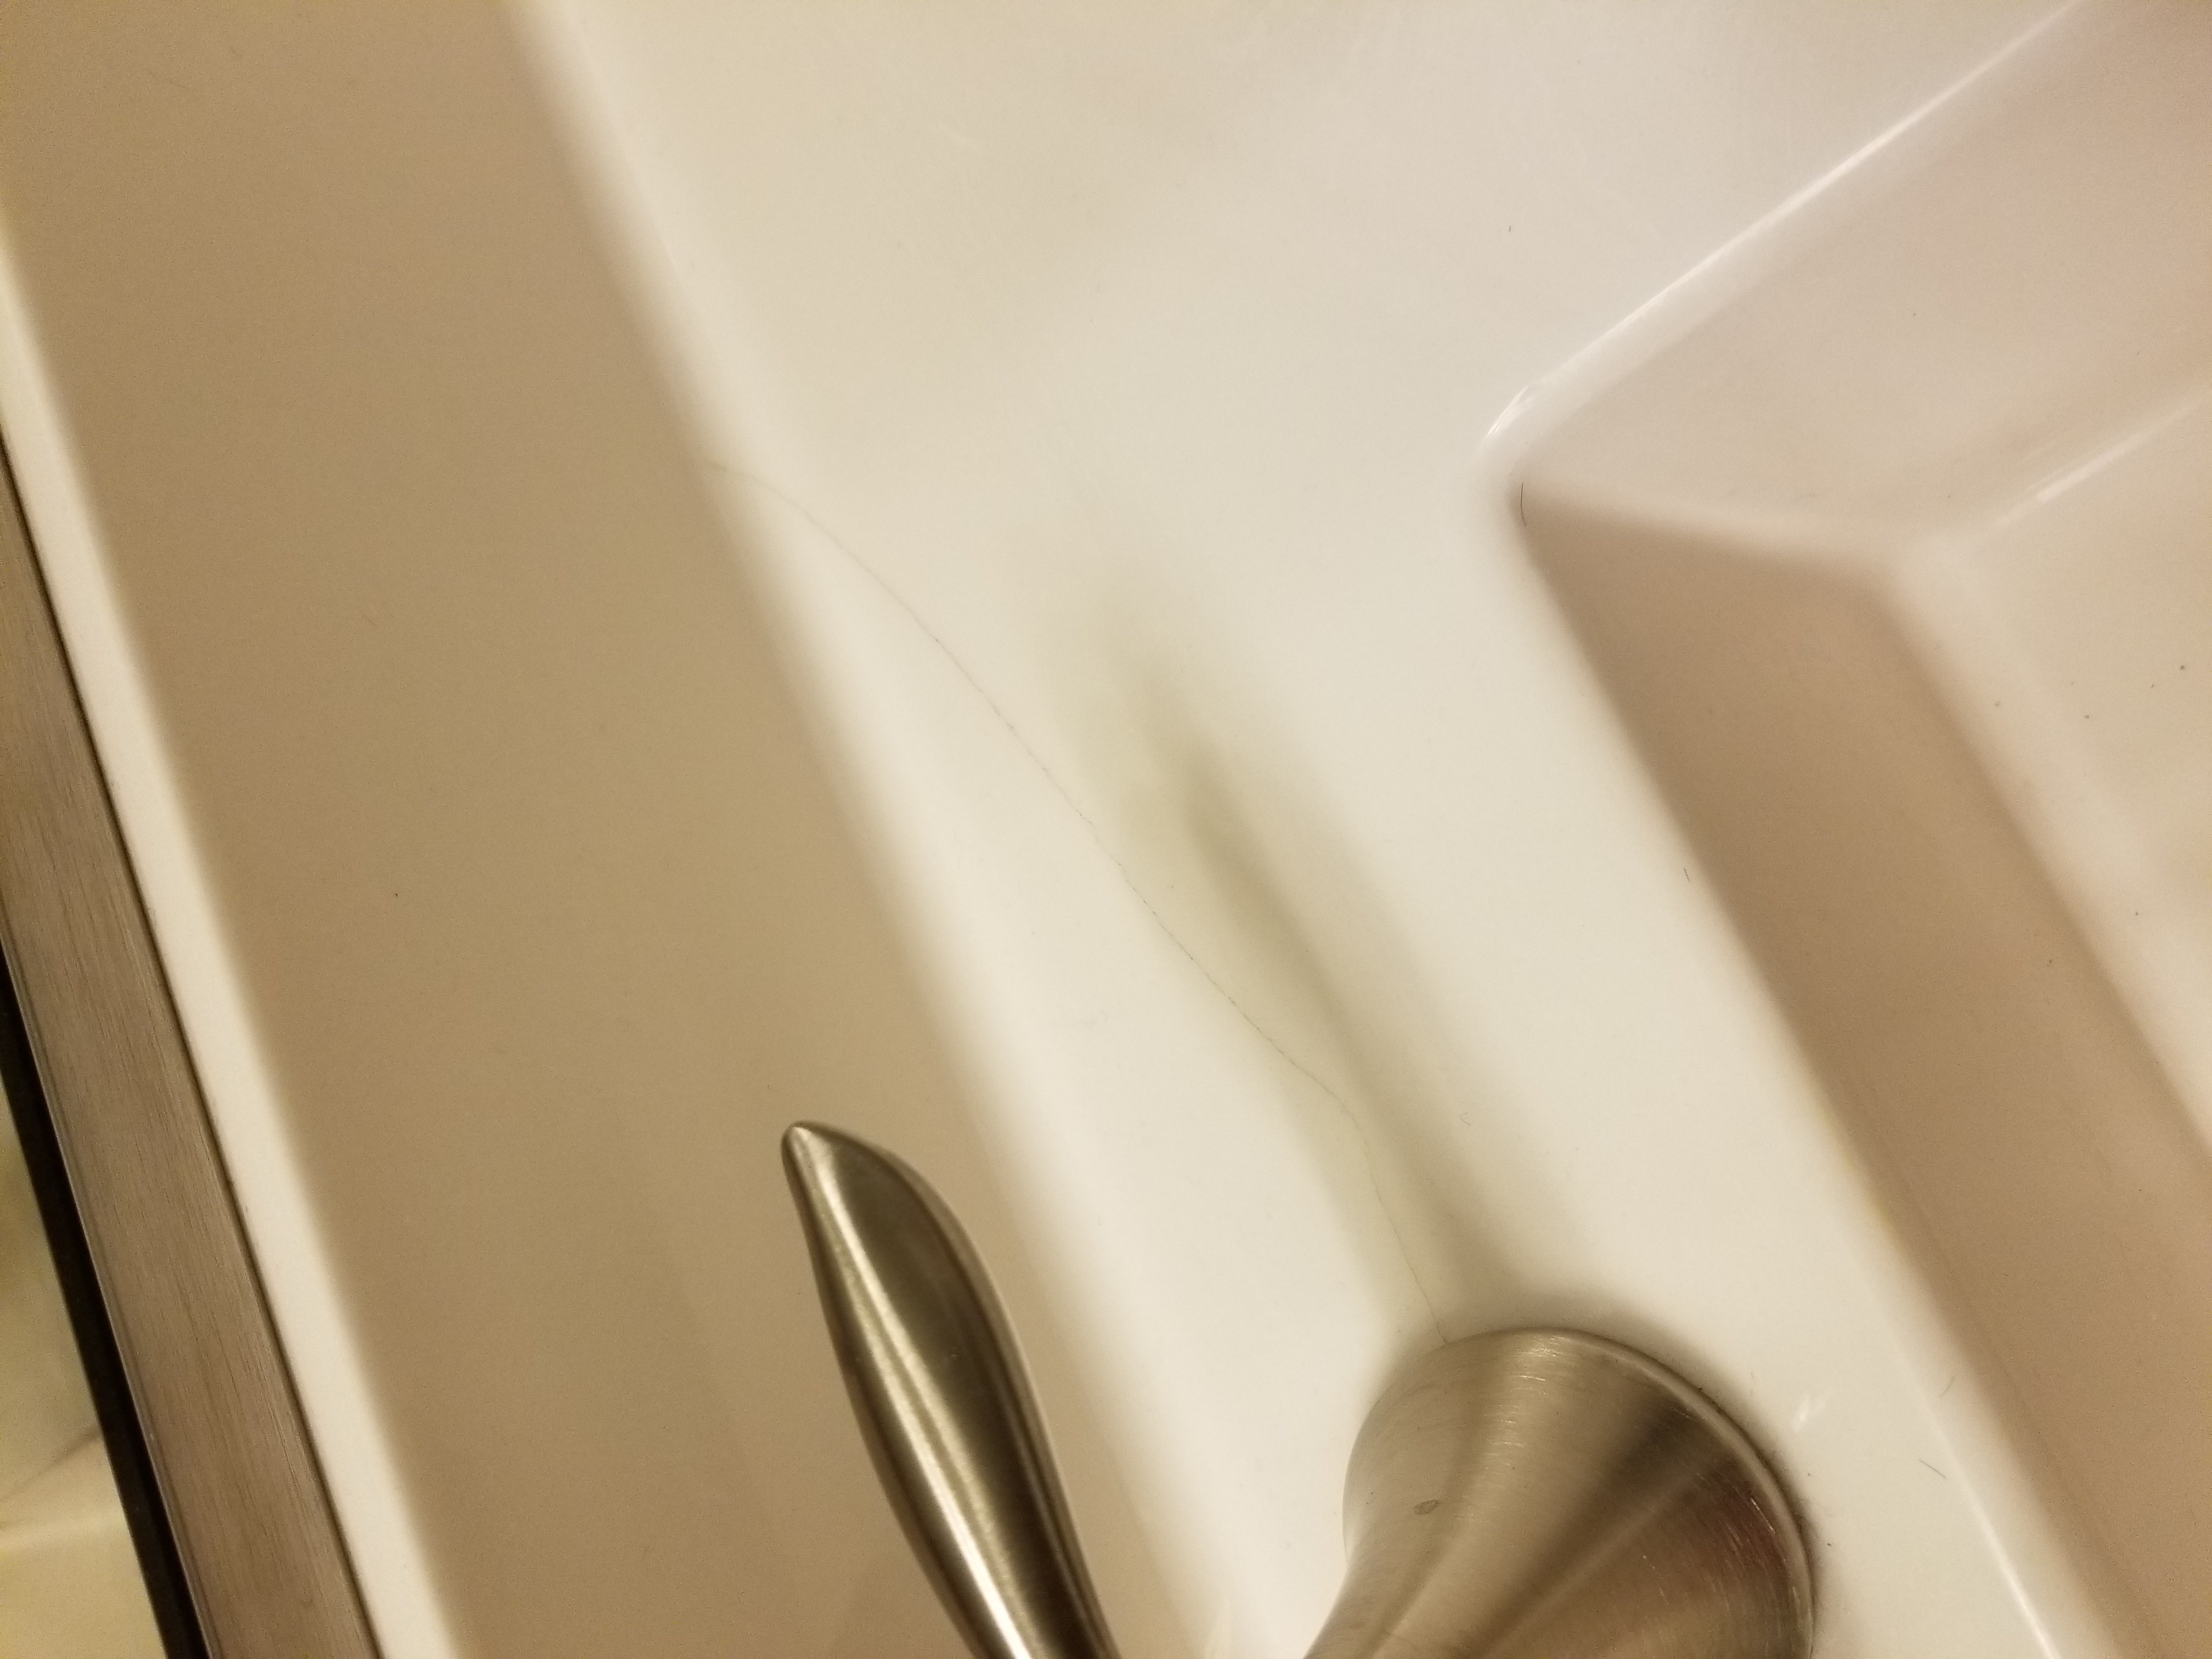 crack in bathroom countertop